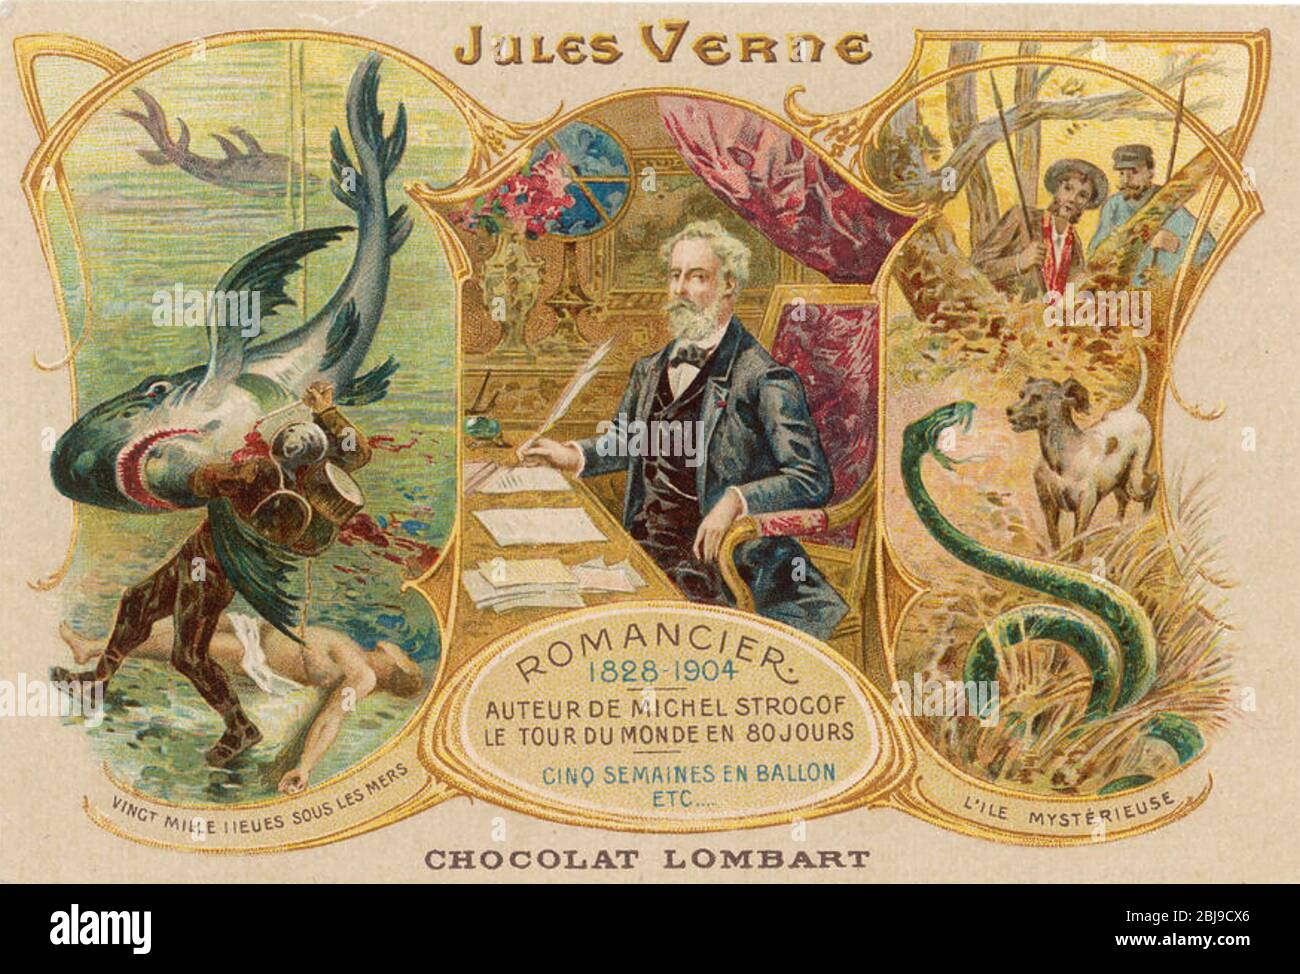 JULES VERNE (1828-1905) romancier français servant à promouvoir une marque de chocolat Banque D'Images